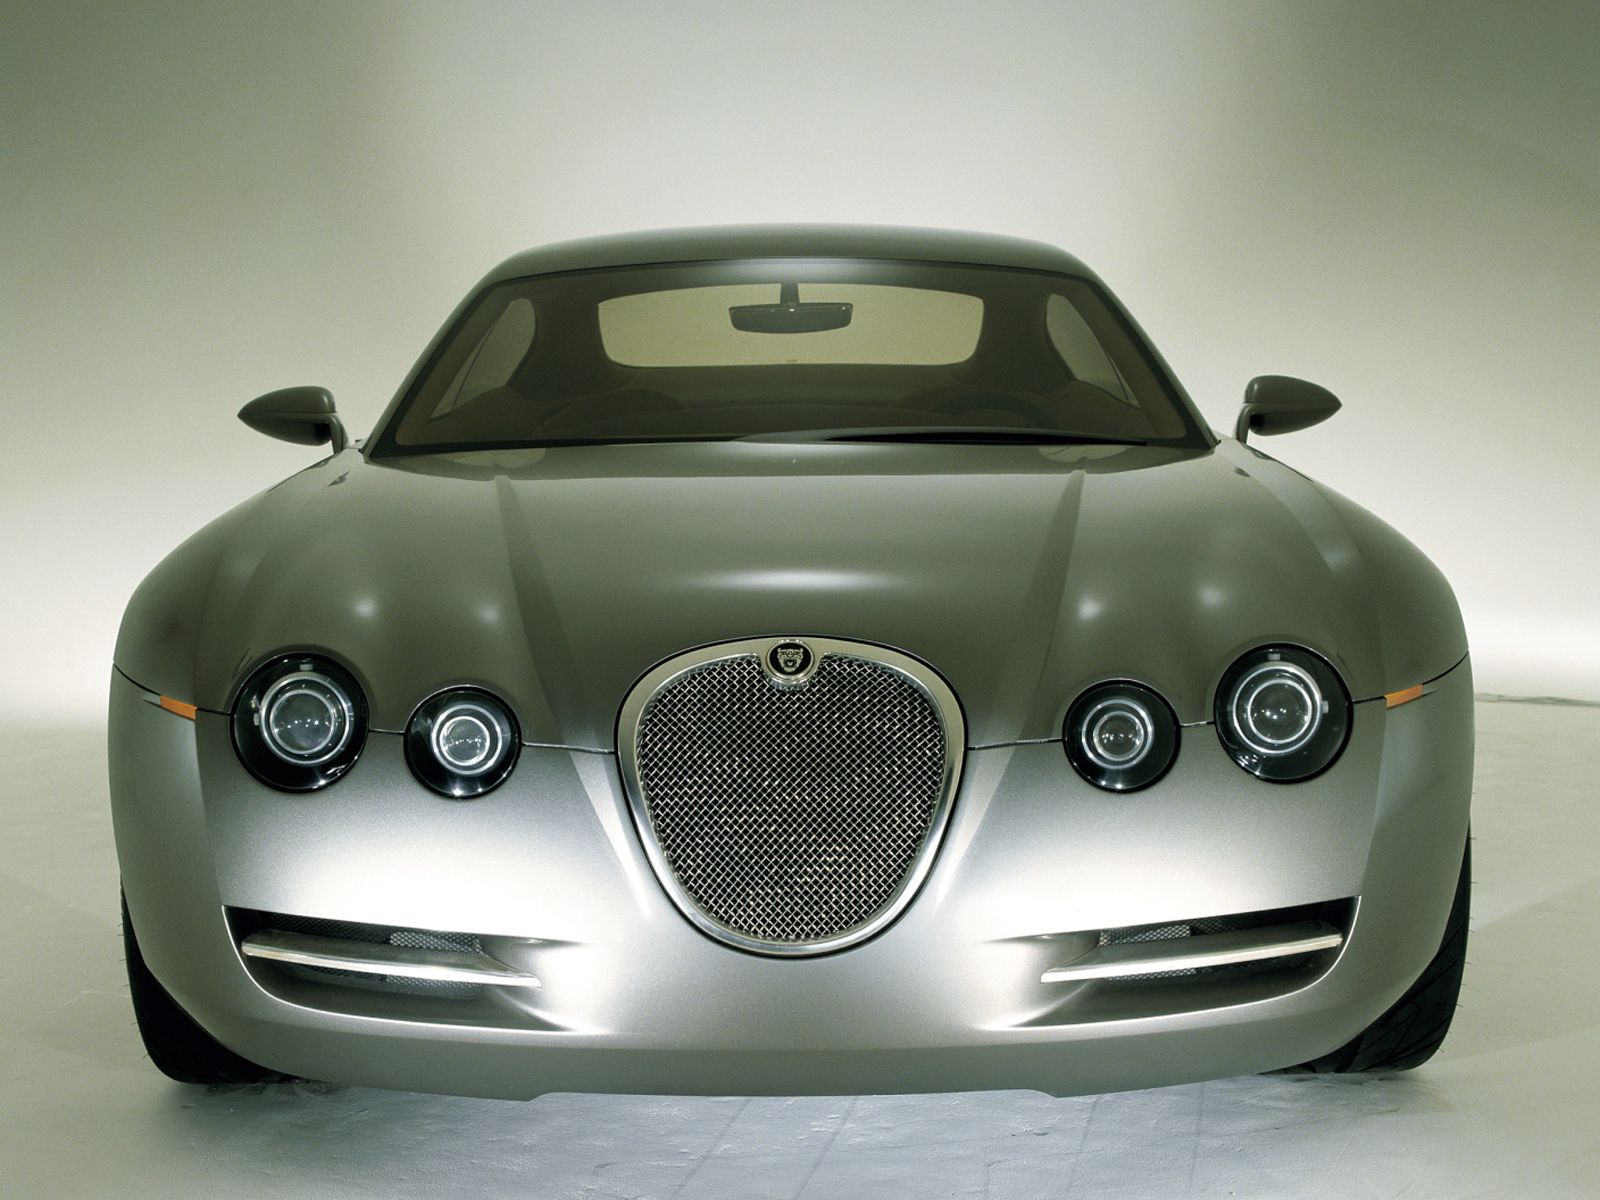 Jaguar R-Coupe Concept (2001) - Old Concept Cars